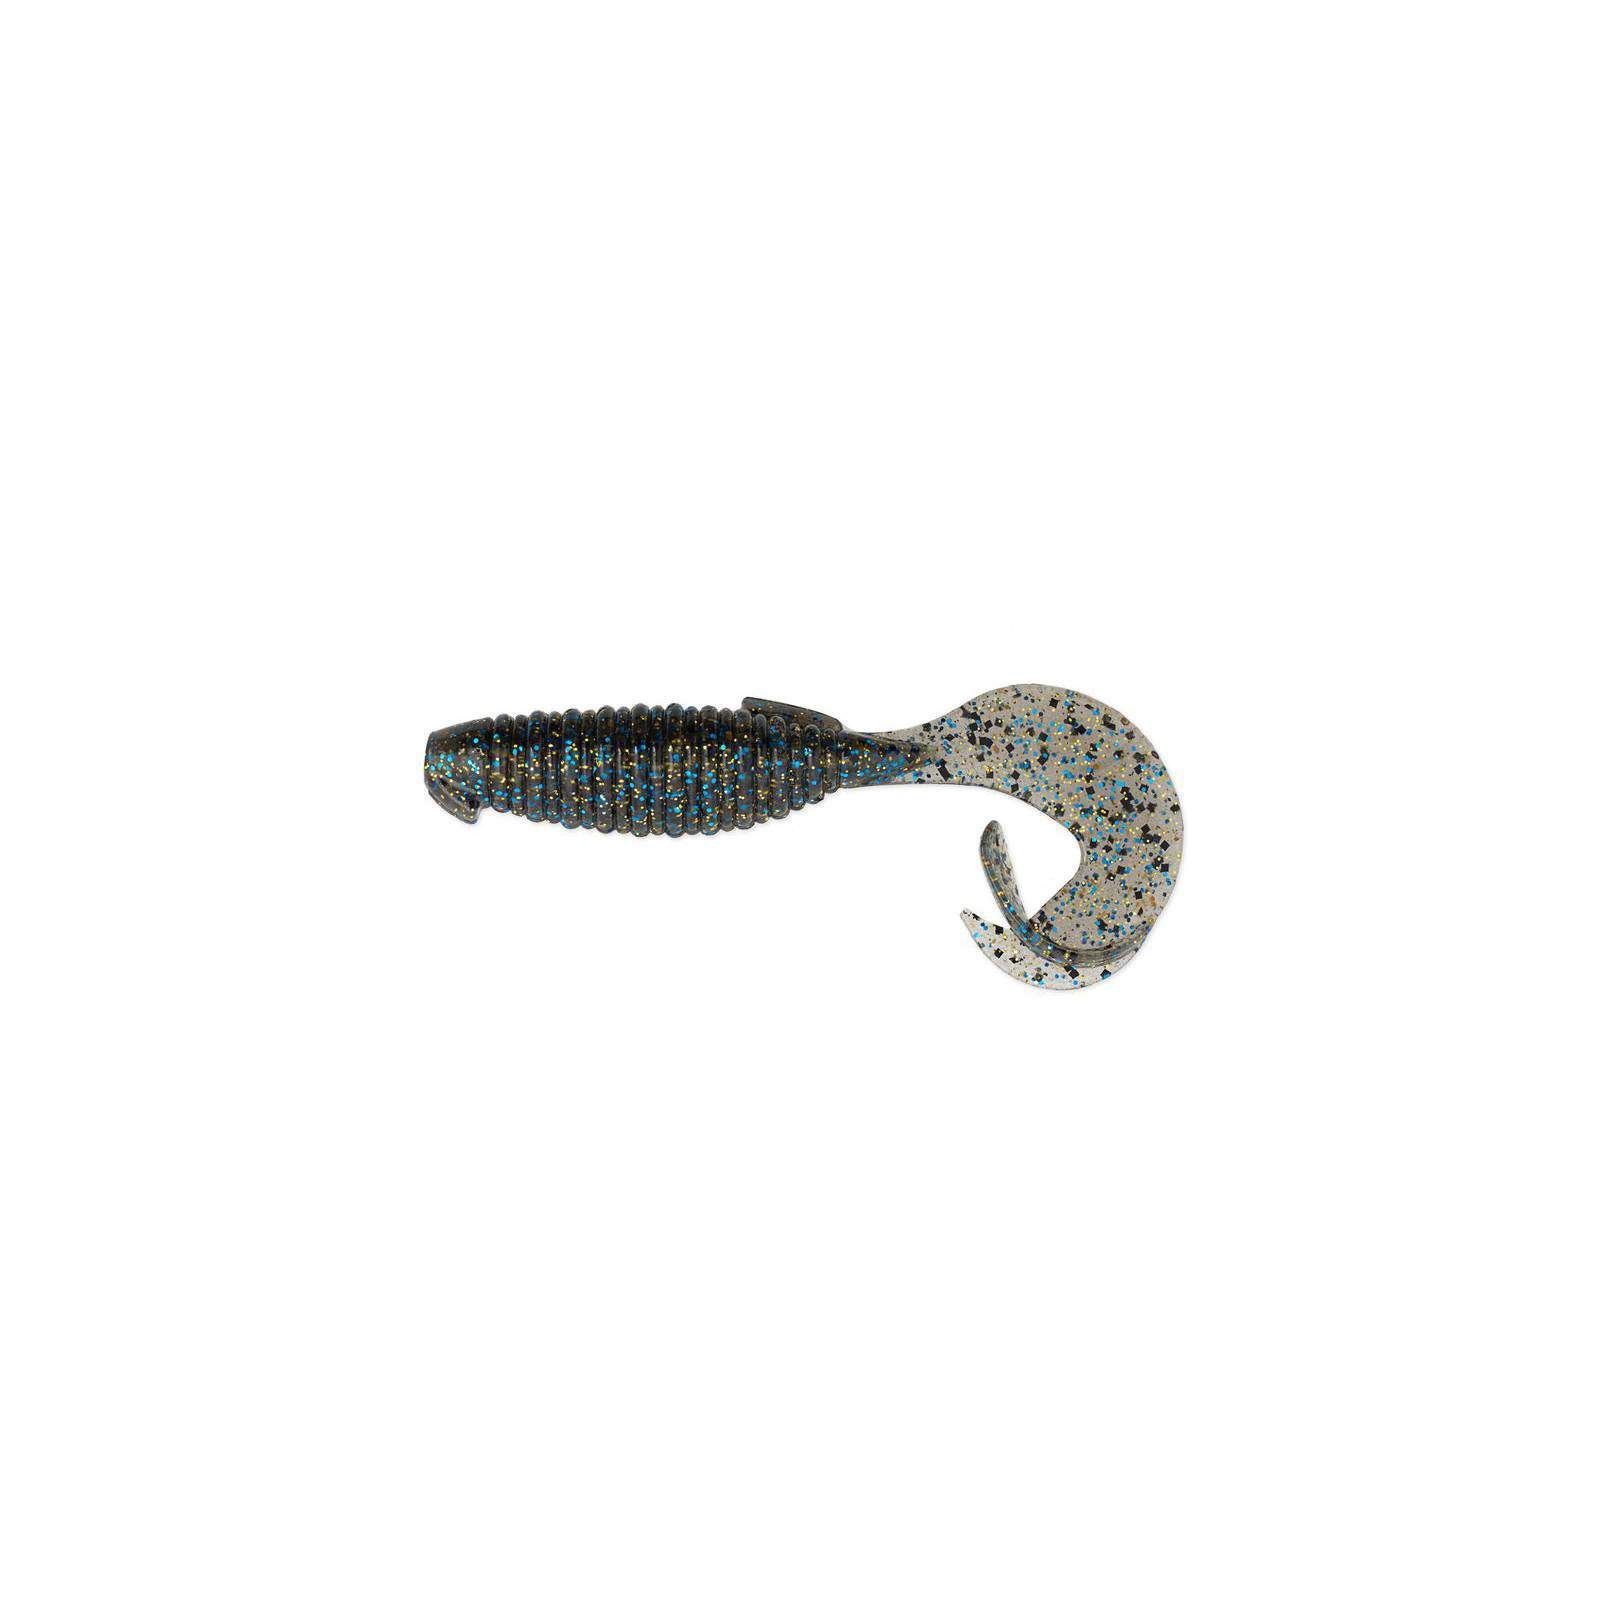 Силикон рыболовный Keitech Flapper Grub 4" (7 шт/упак) ц:205 bluegill (1551.09.48)